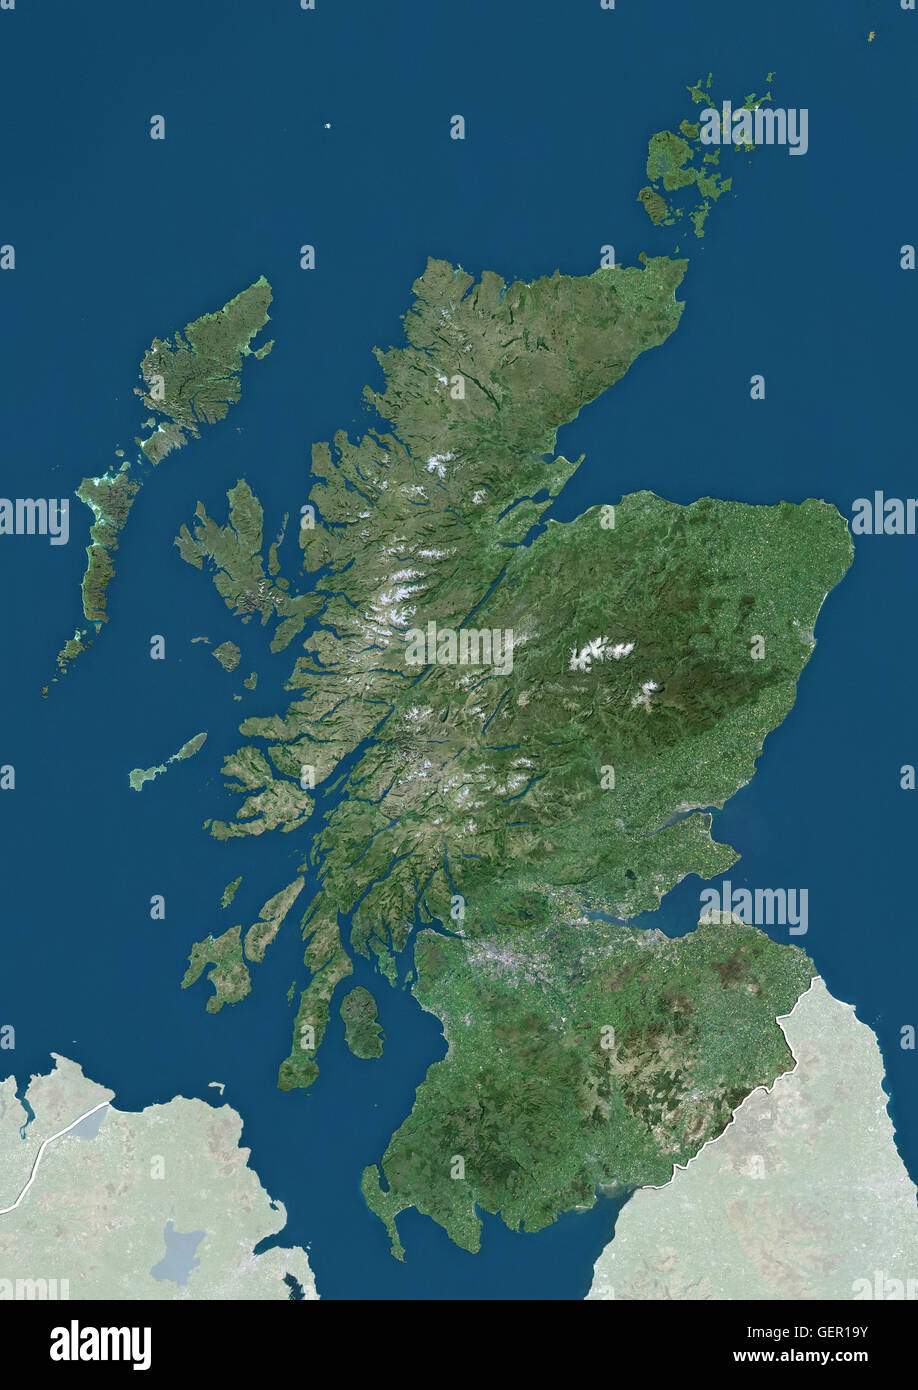 Vista satellitare della Scozia, Regno Unito (con confini tra paesi e maschera). L'immagine mostra la Scozia continentale, comprese le Ebridi e Orkney Islands. Questa immagine è stata elaborata sulla base dei dati acquisiti dai satelliti Landsat. Foto Stock